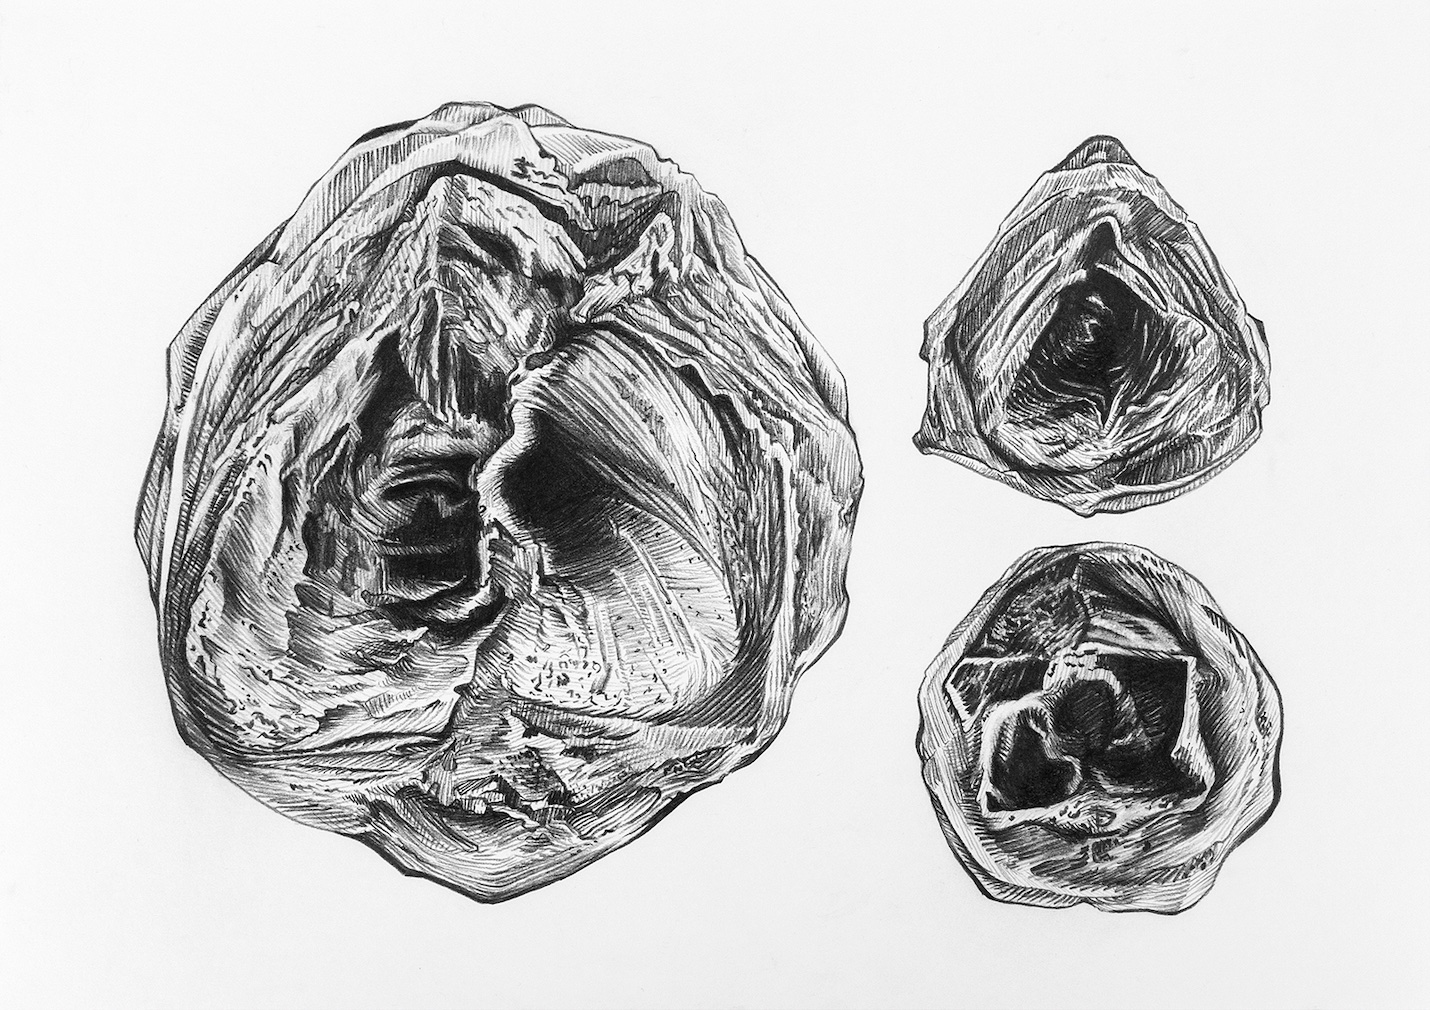 Dulce Chacón, Micrometeoritos, 2019, Lápiz sobre papel, 29.7 x 42 cm. Cortesía de la artista y Banda Municipal. Foto: Abdel Zuñiga López